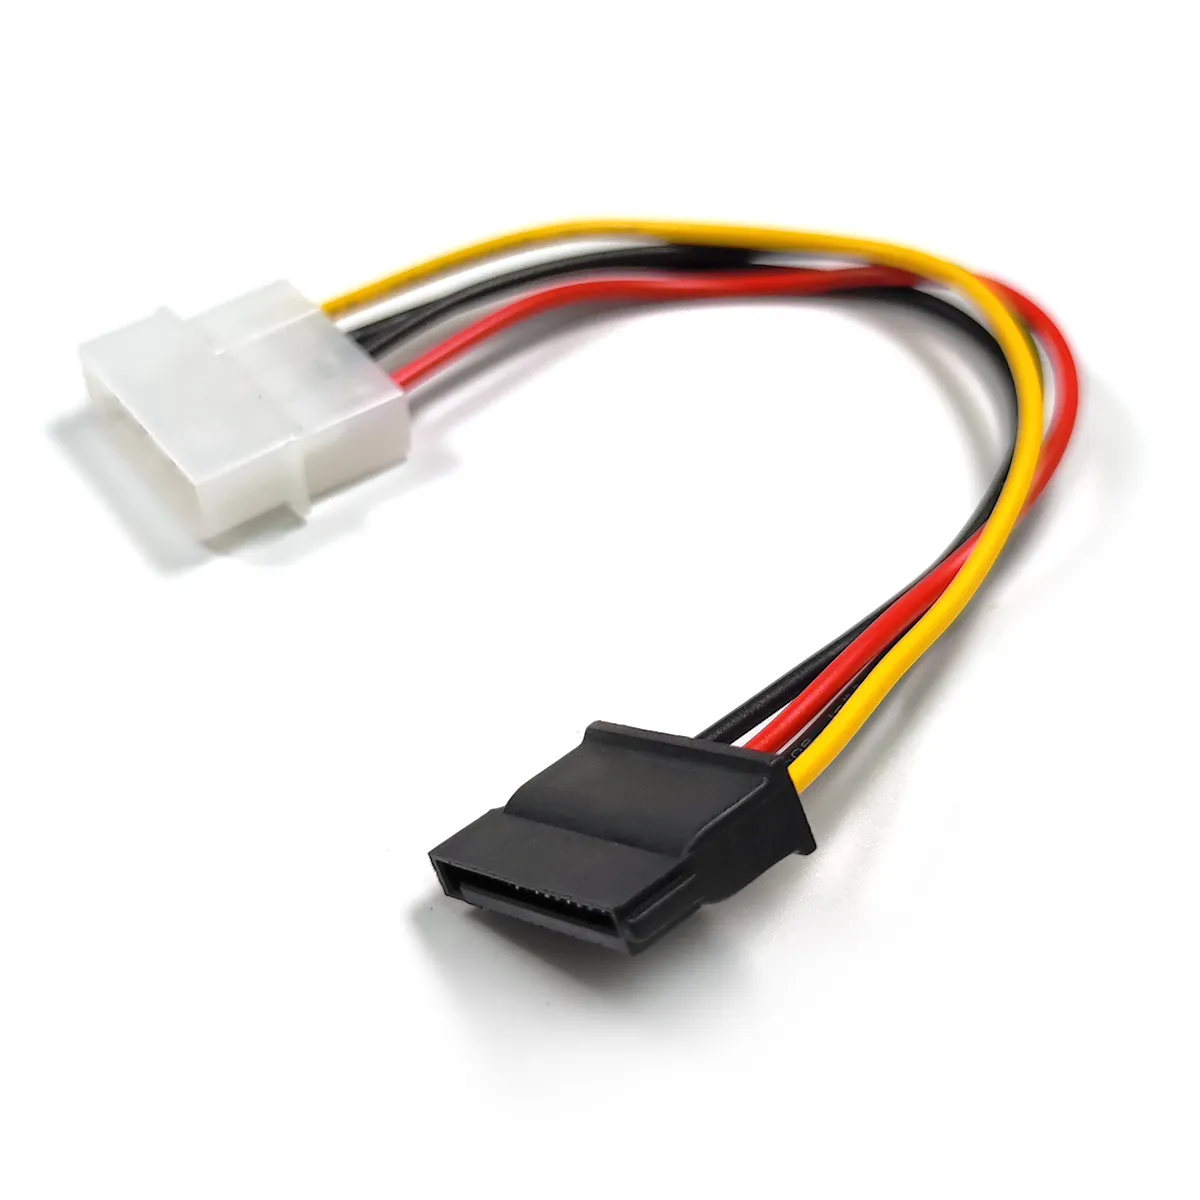 SATA Power cable 15PIN Male to 4PIN MALE Molex IDE 4 Pin TO SATA